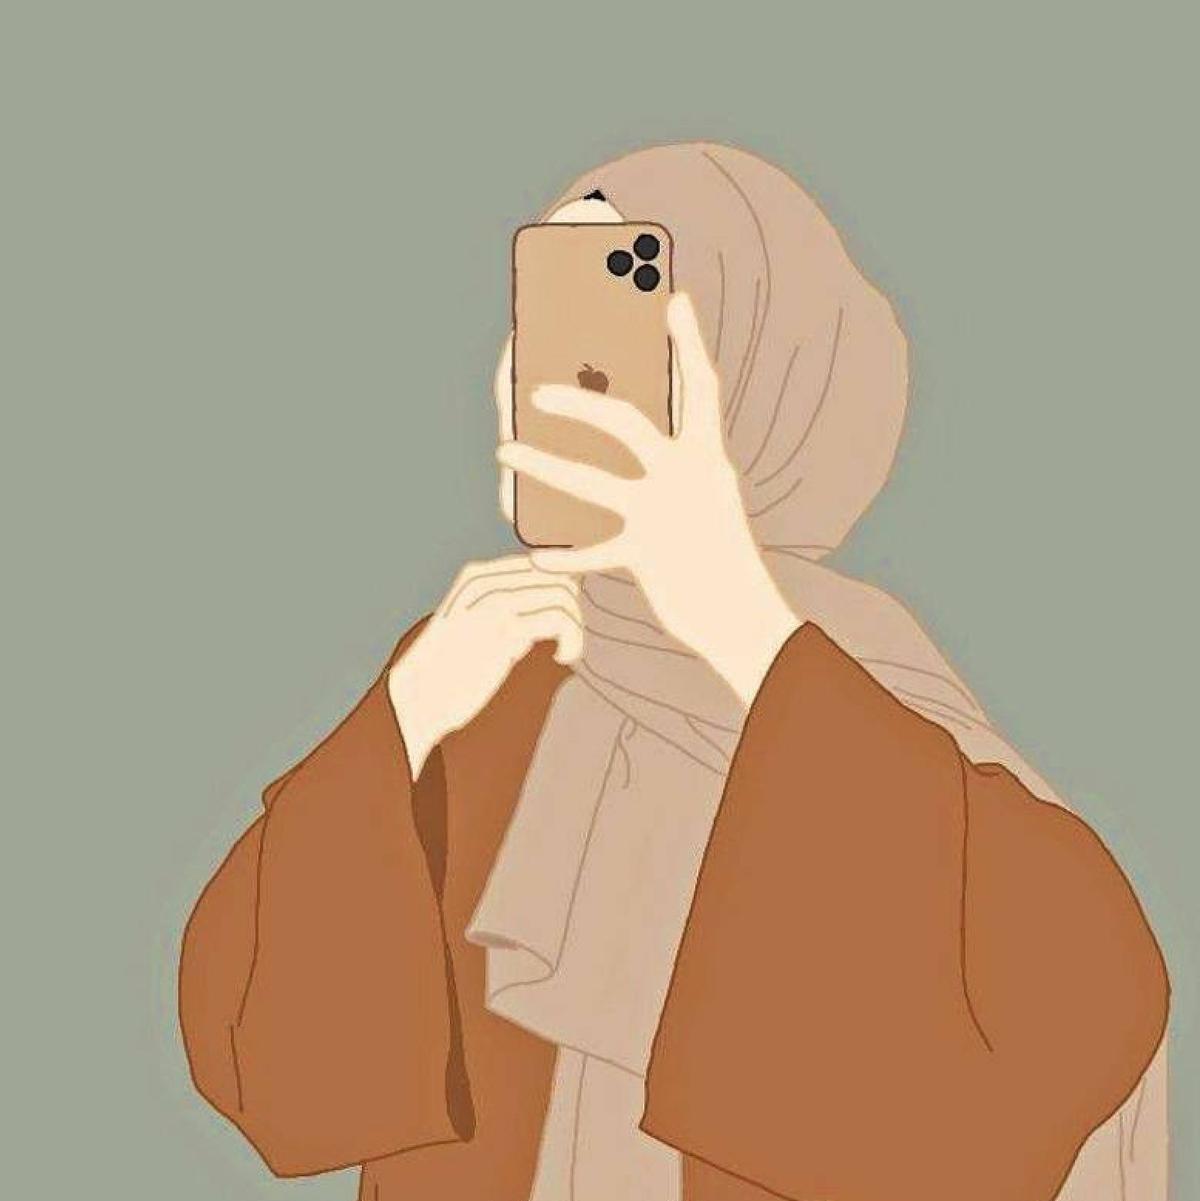 HijabiVlogs 's images